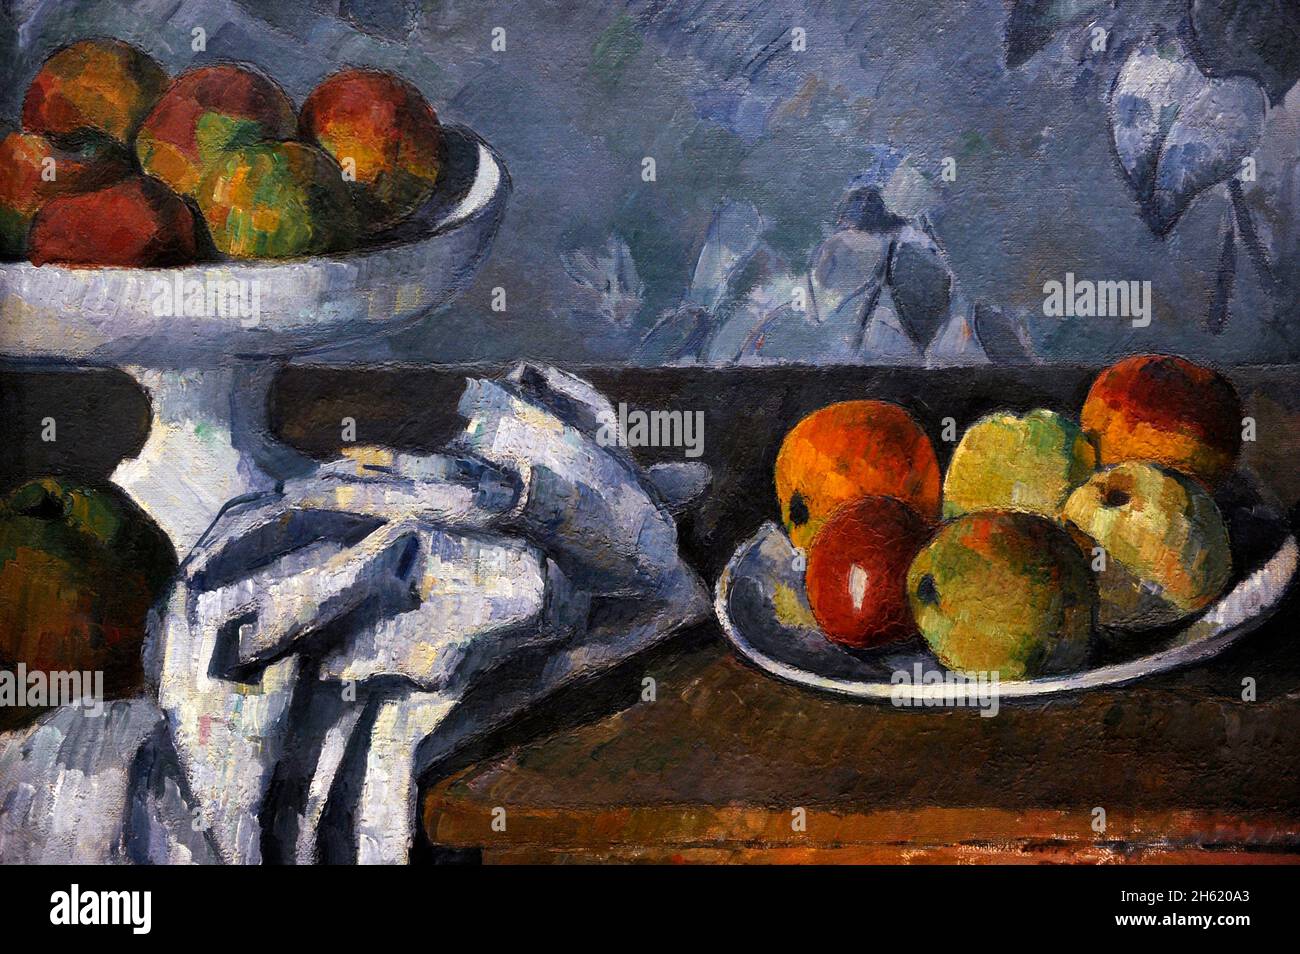 Paul Cezanne (1839-1906). Pittore francese post-impressionista. Ancora vita con le mele in una ciotola, 1879-1882. Olio su tela (43 x 53 cm). NY Carlsberg Glyptotek. Copenaghen, Danimarca. Foto Stock